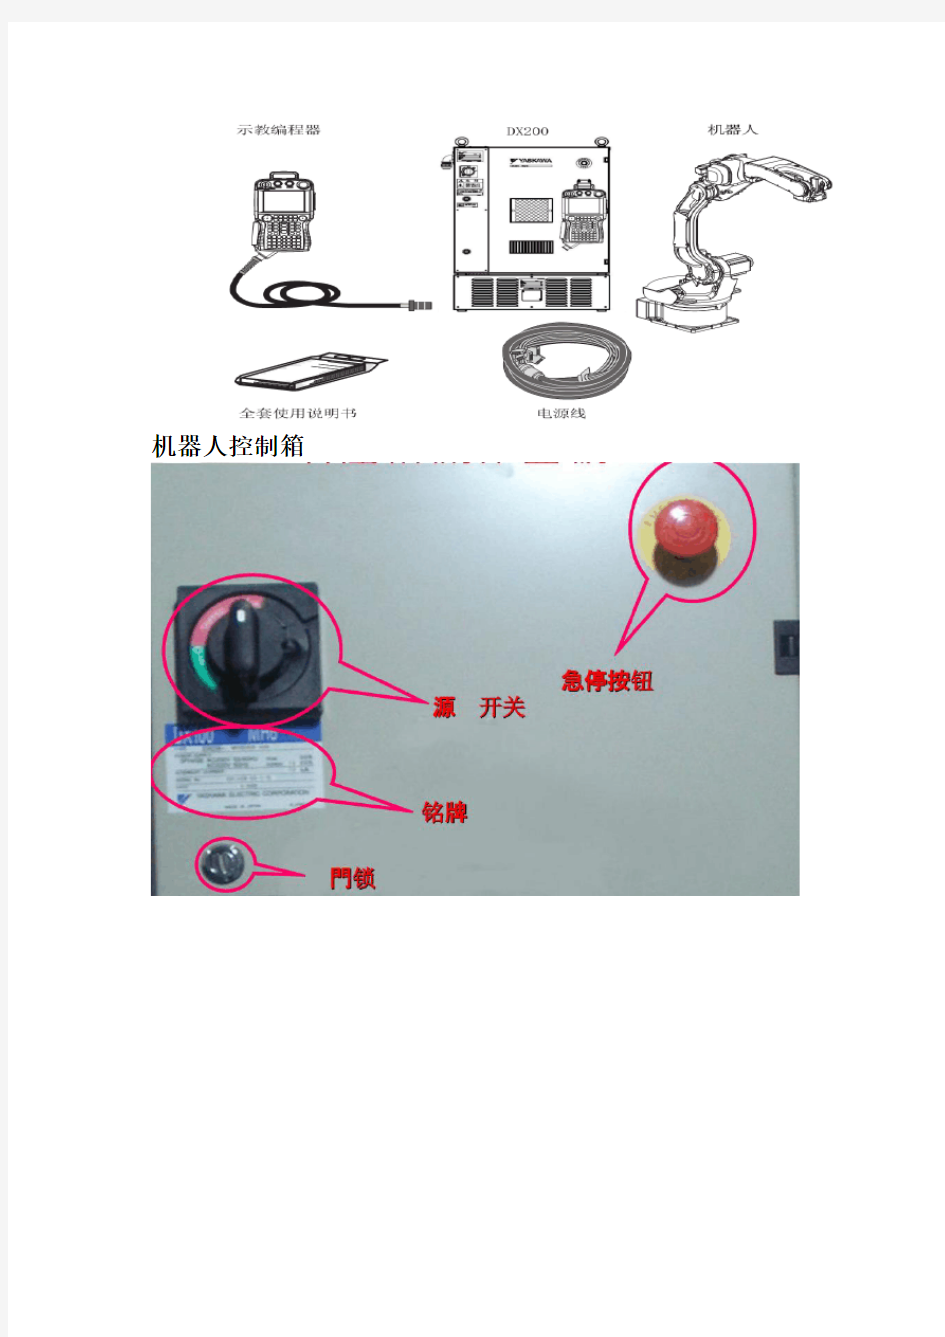 安川机器人初级教程 (1)